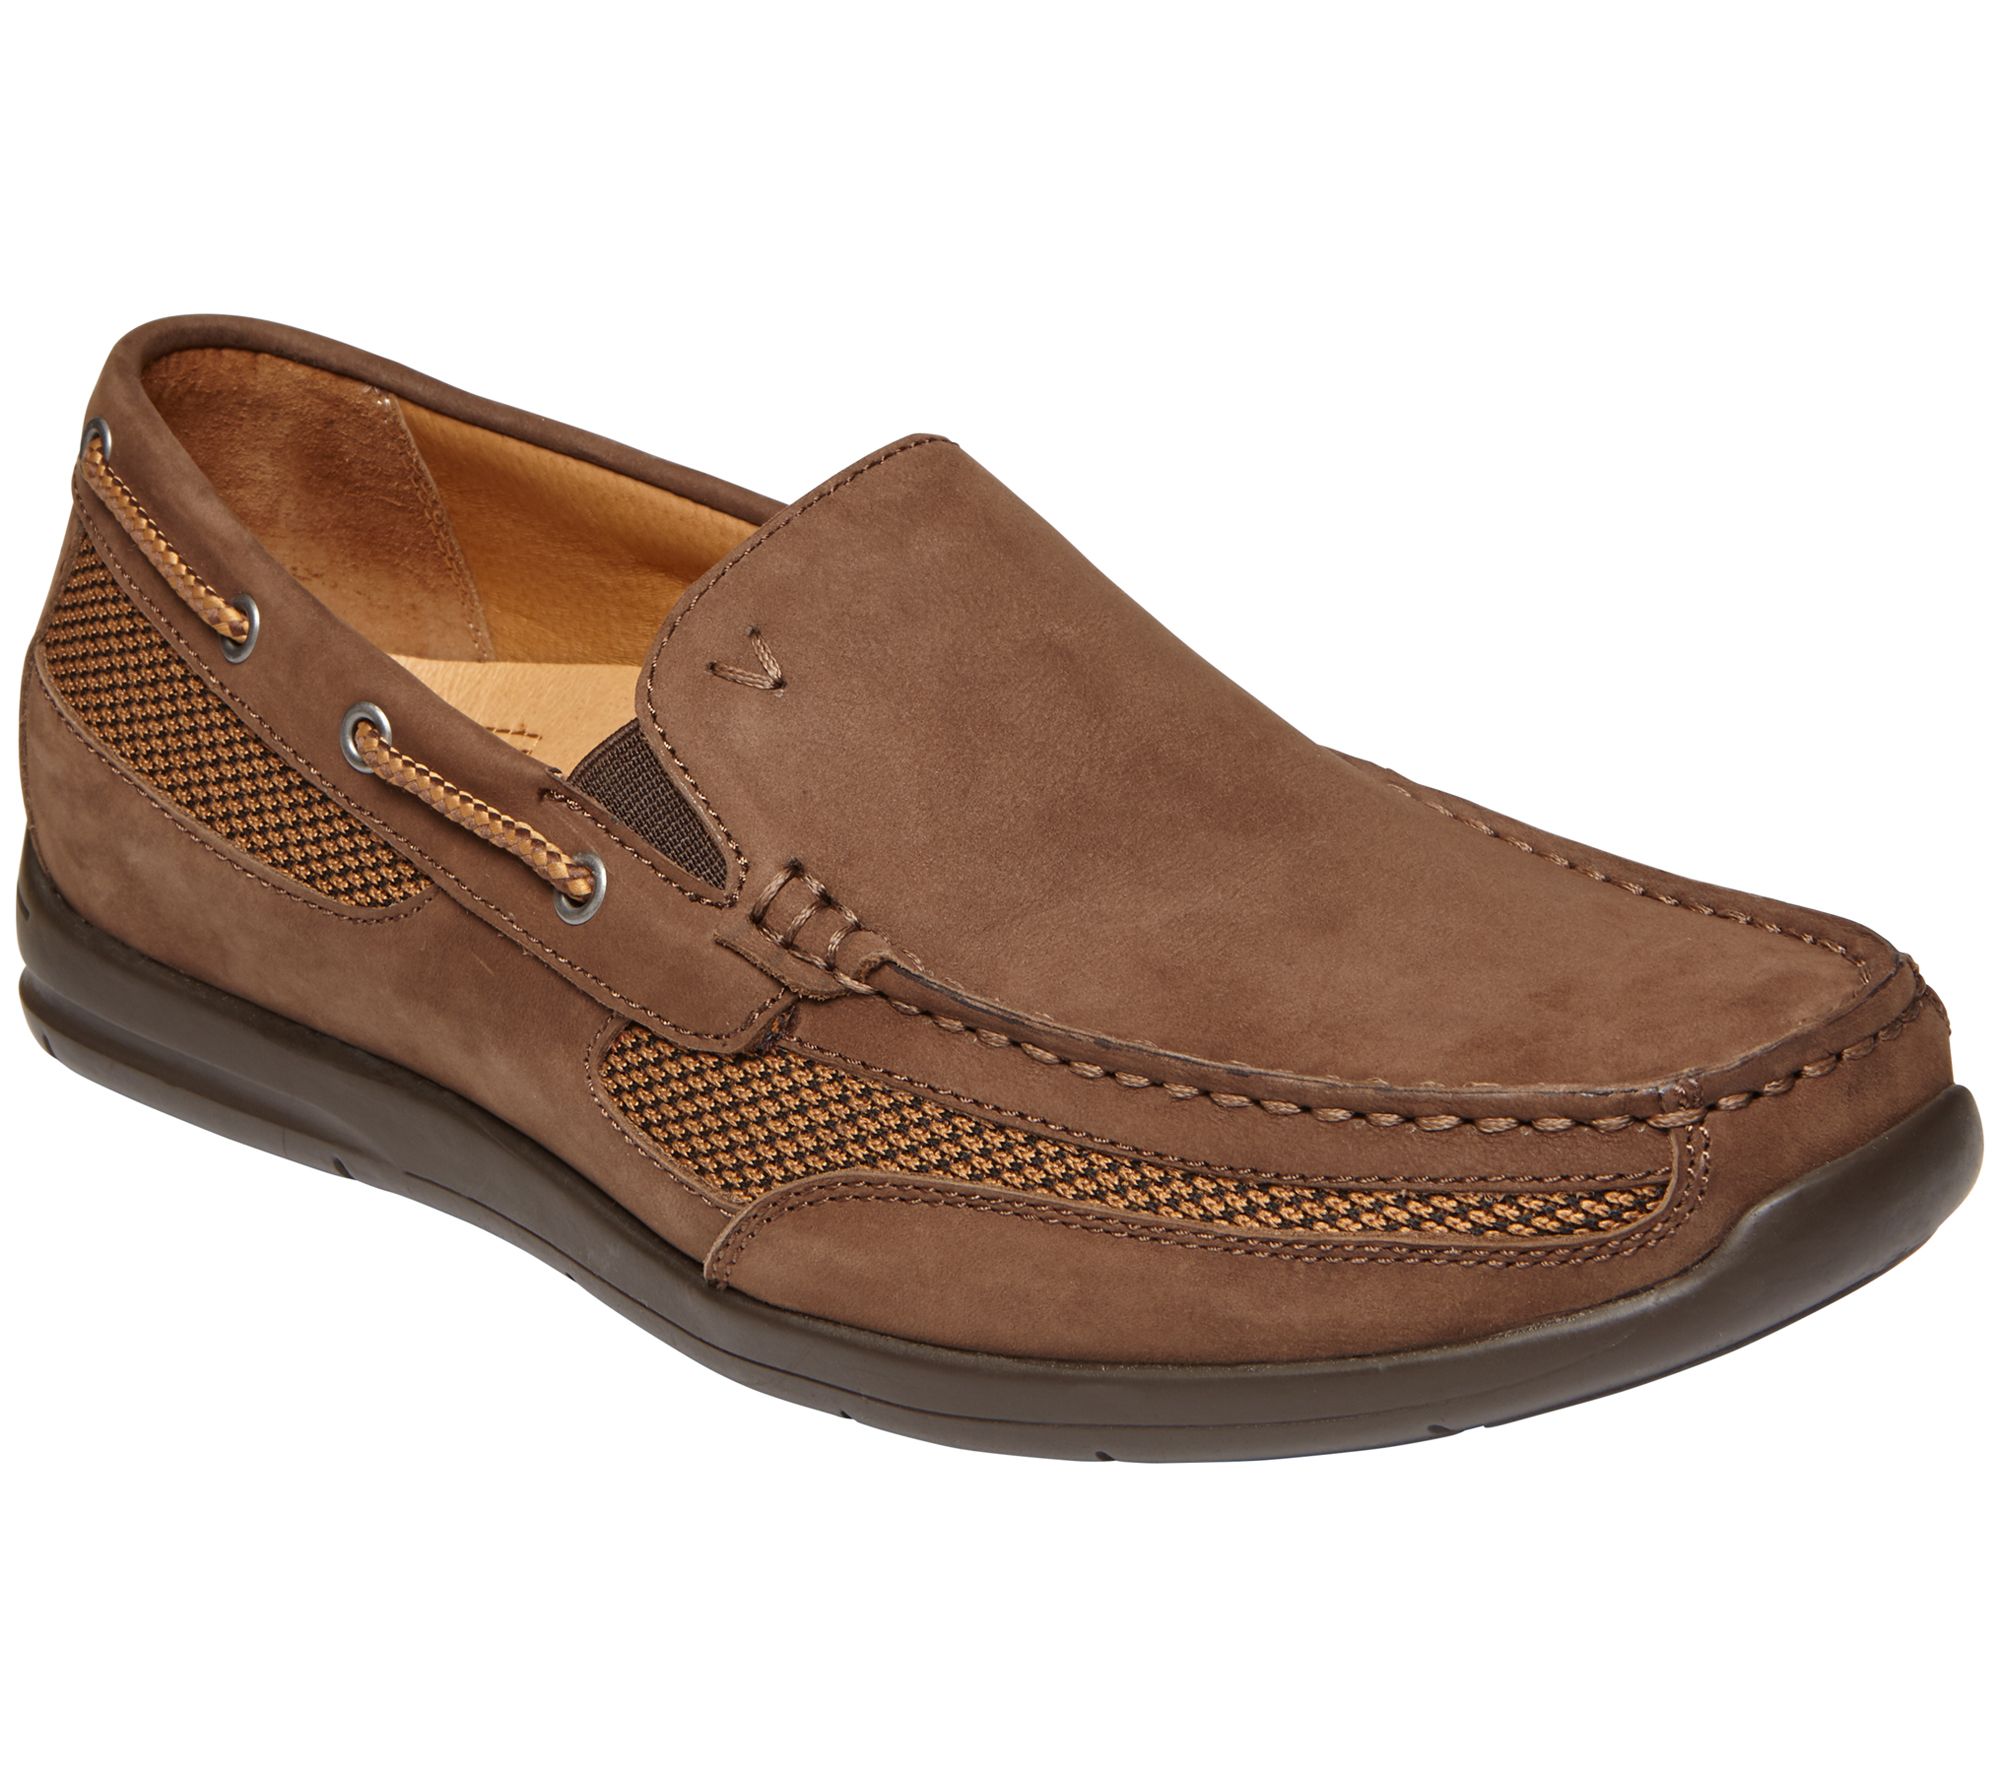 Vionic Men's Leather Boat Shoes - Earl - QVC.com